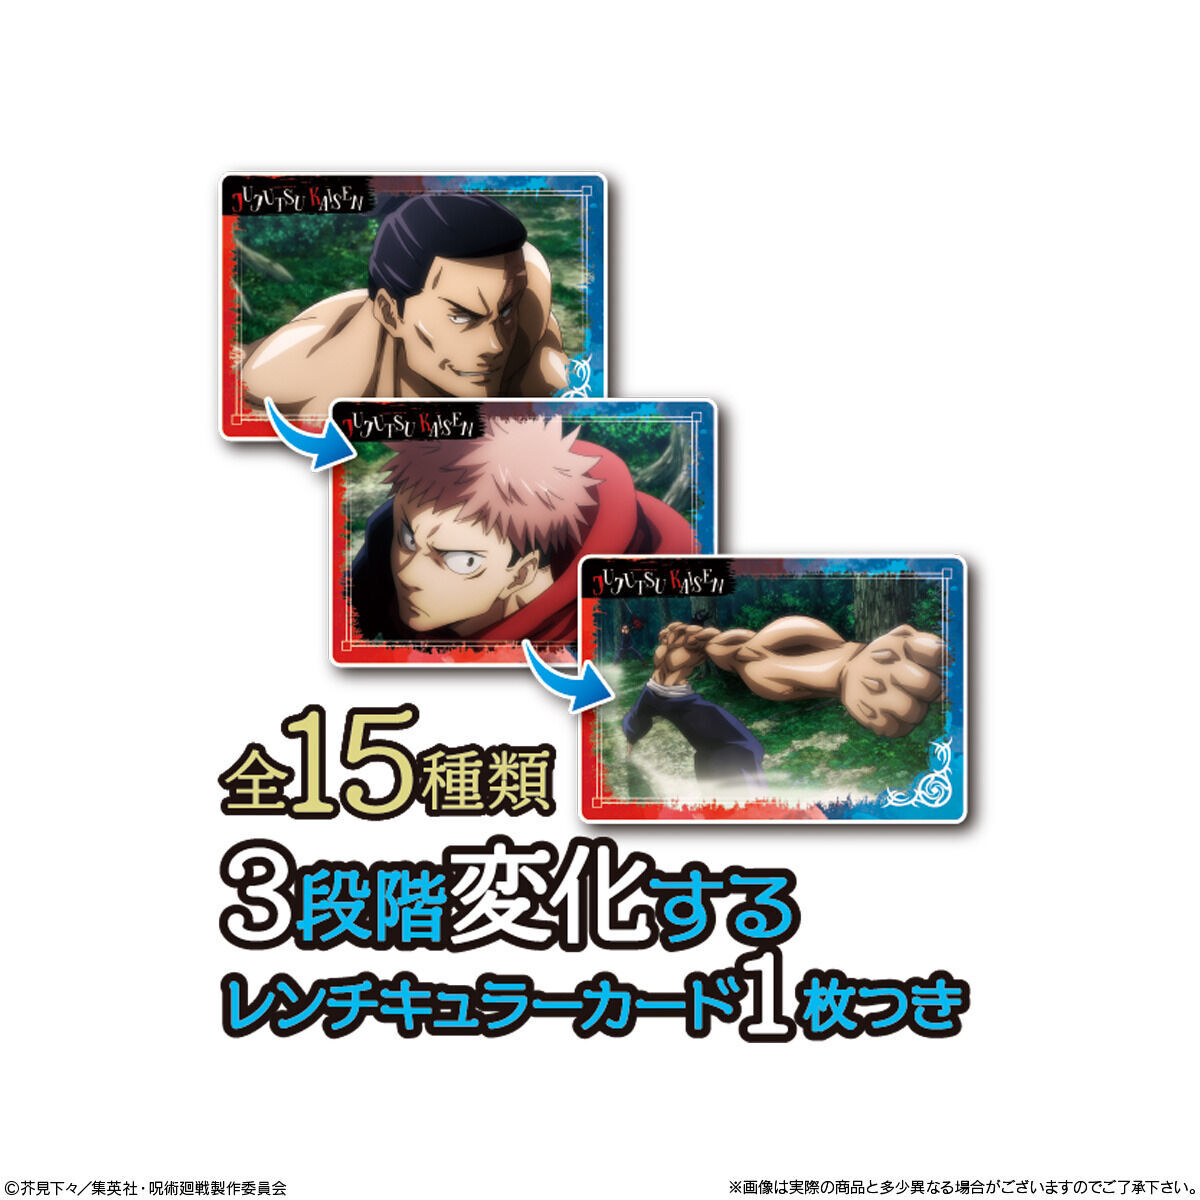 【食玩】呪術廻戦『呪術廻戦 PLAY BACKカードチョコスナック2』10個入りBOX-002